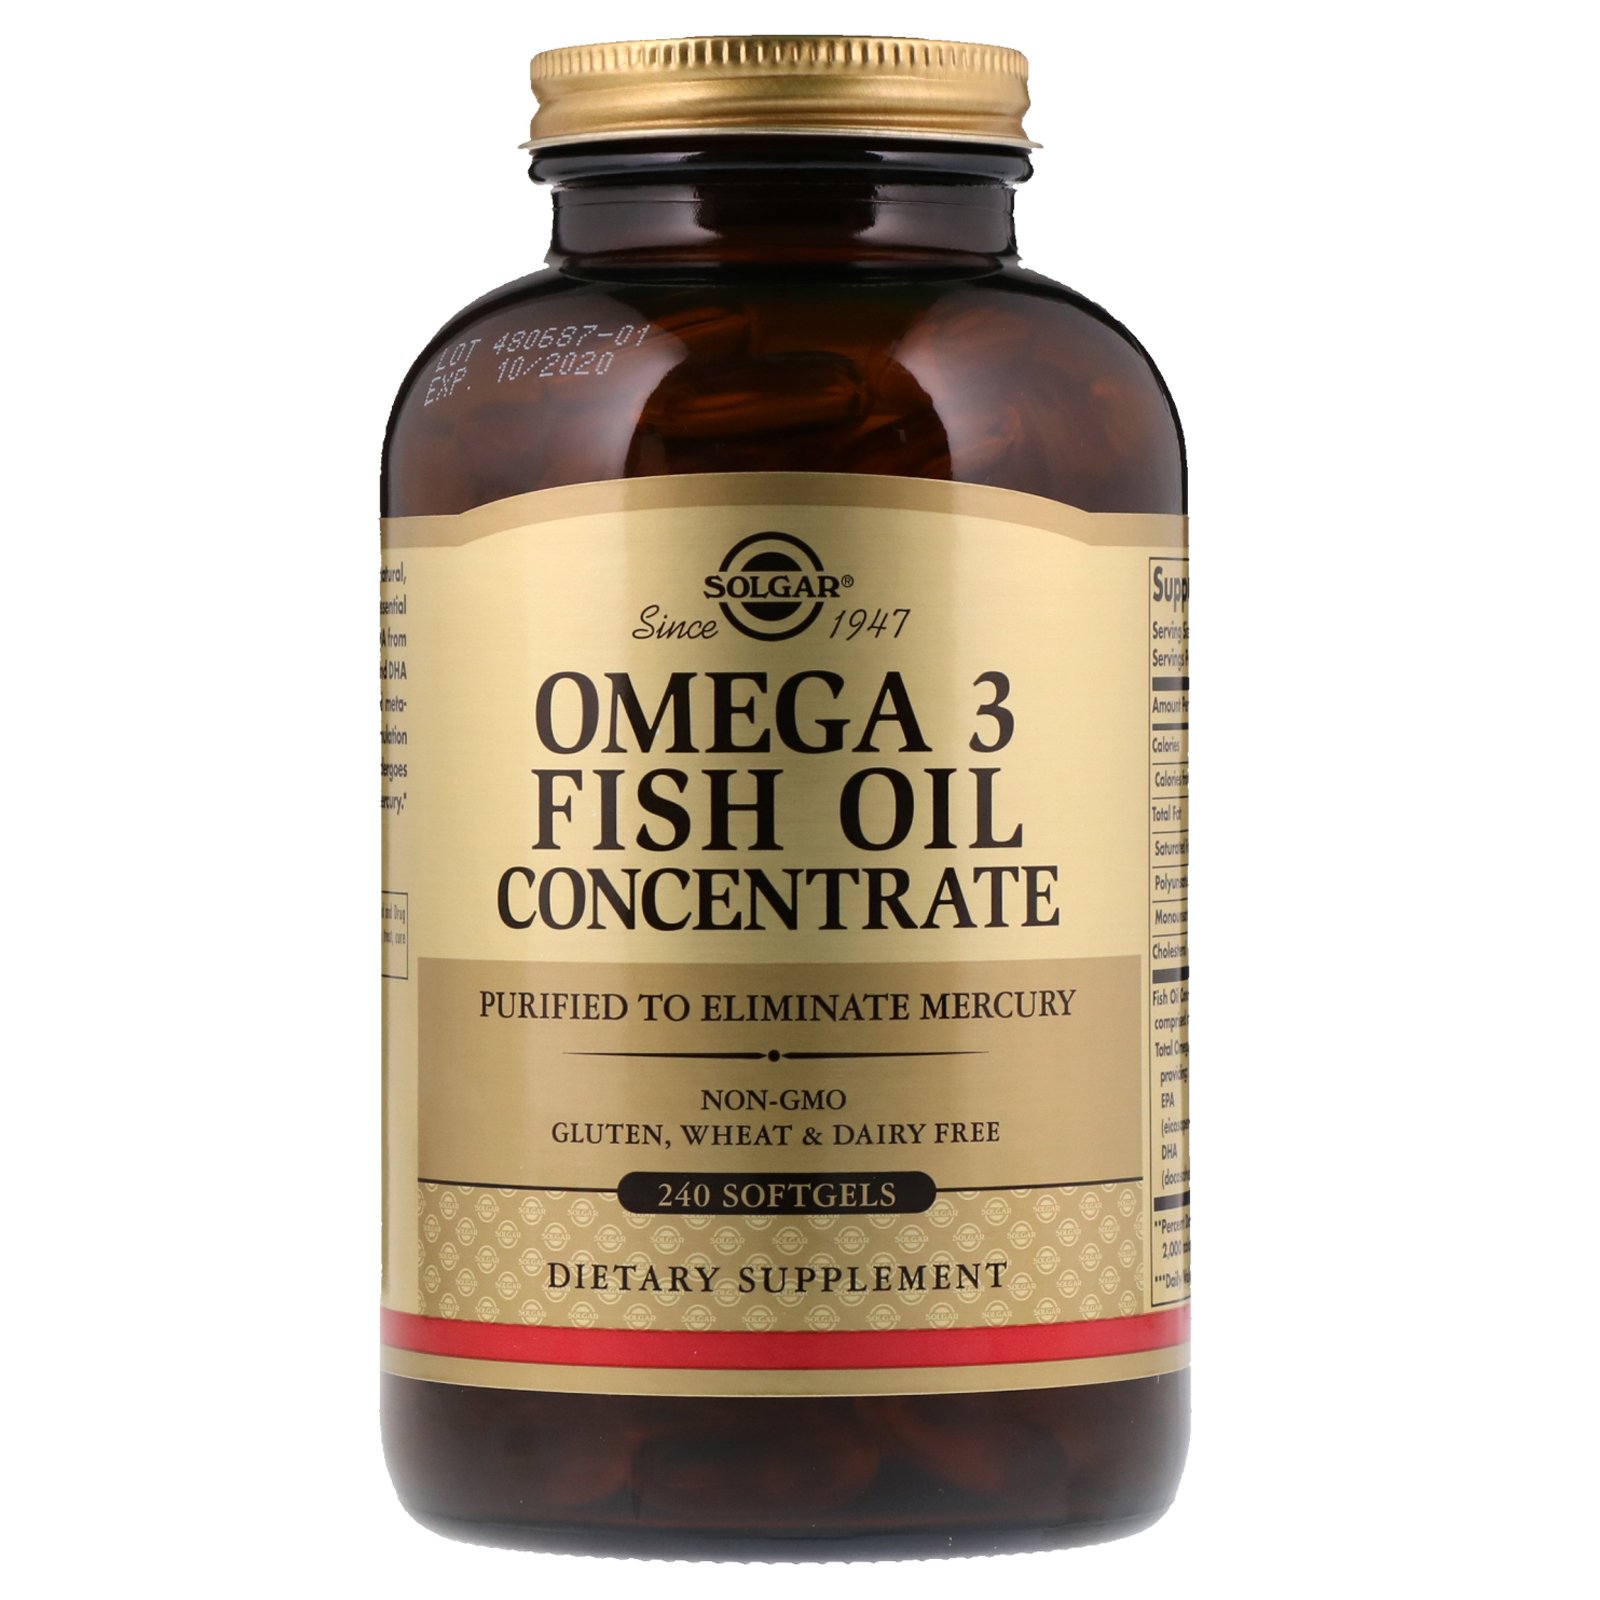 Omega 3 Fish Oil Concentrate, 120 шт, Solgar. Омега 3 (Рыбий жир). Поддержание здоровья Укрепление суставов и связок Здоровье кожи Профилактика ССЗ Противовоспалительные свойства 